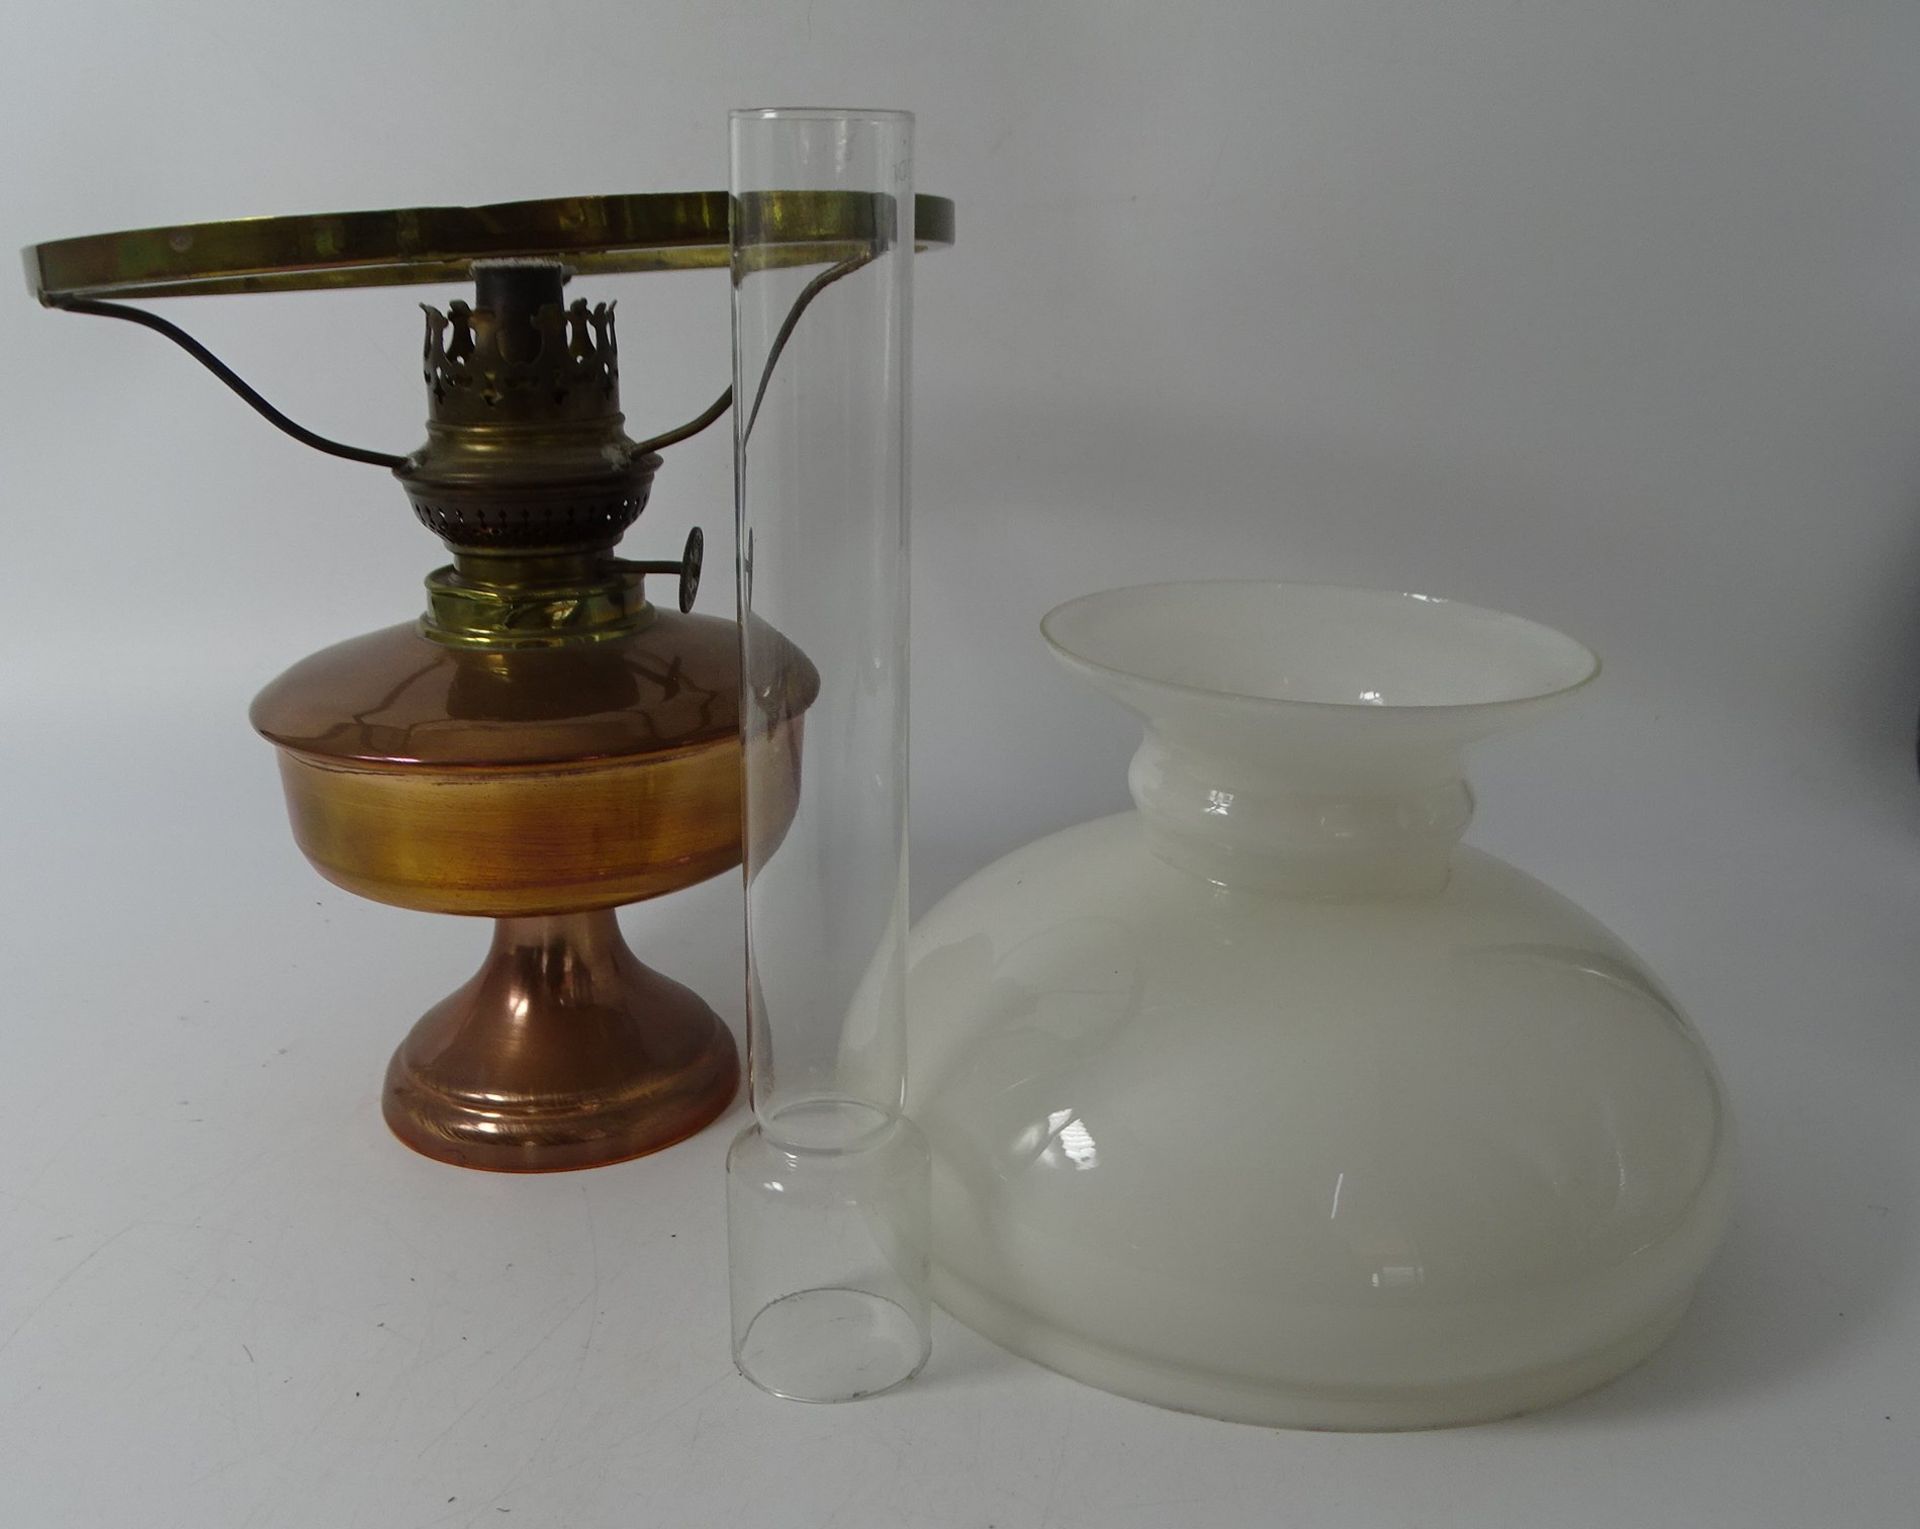 kl. Petroleum-Lampe, neuzeitlich, Kupferstand, H-33 cm - Bild 2 aus 3